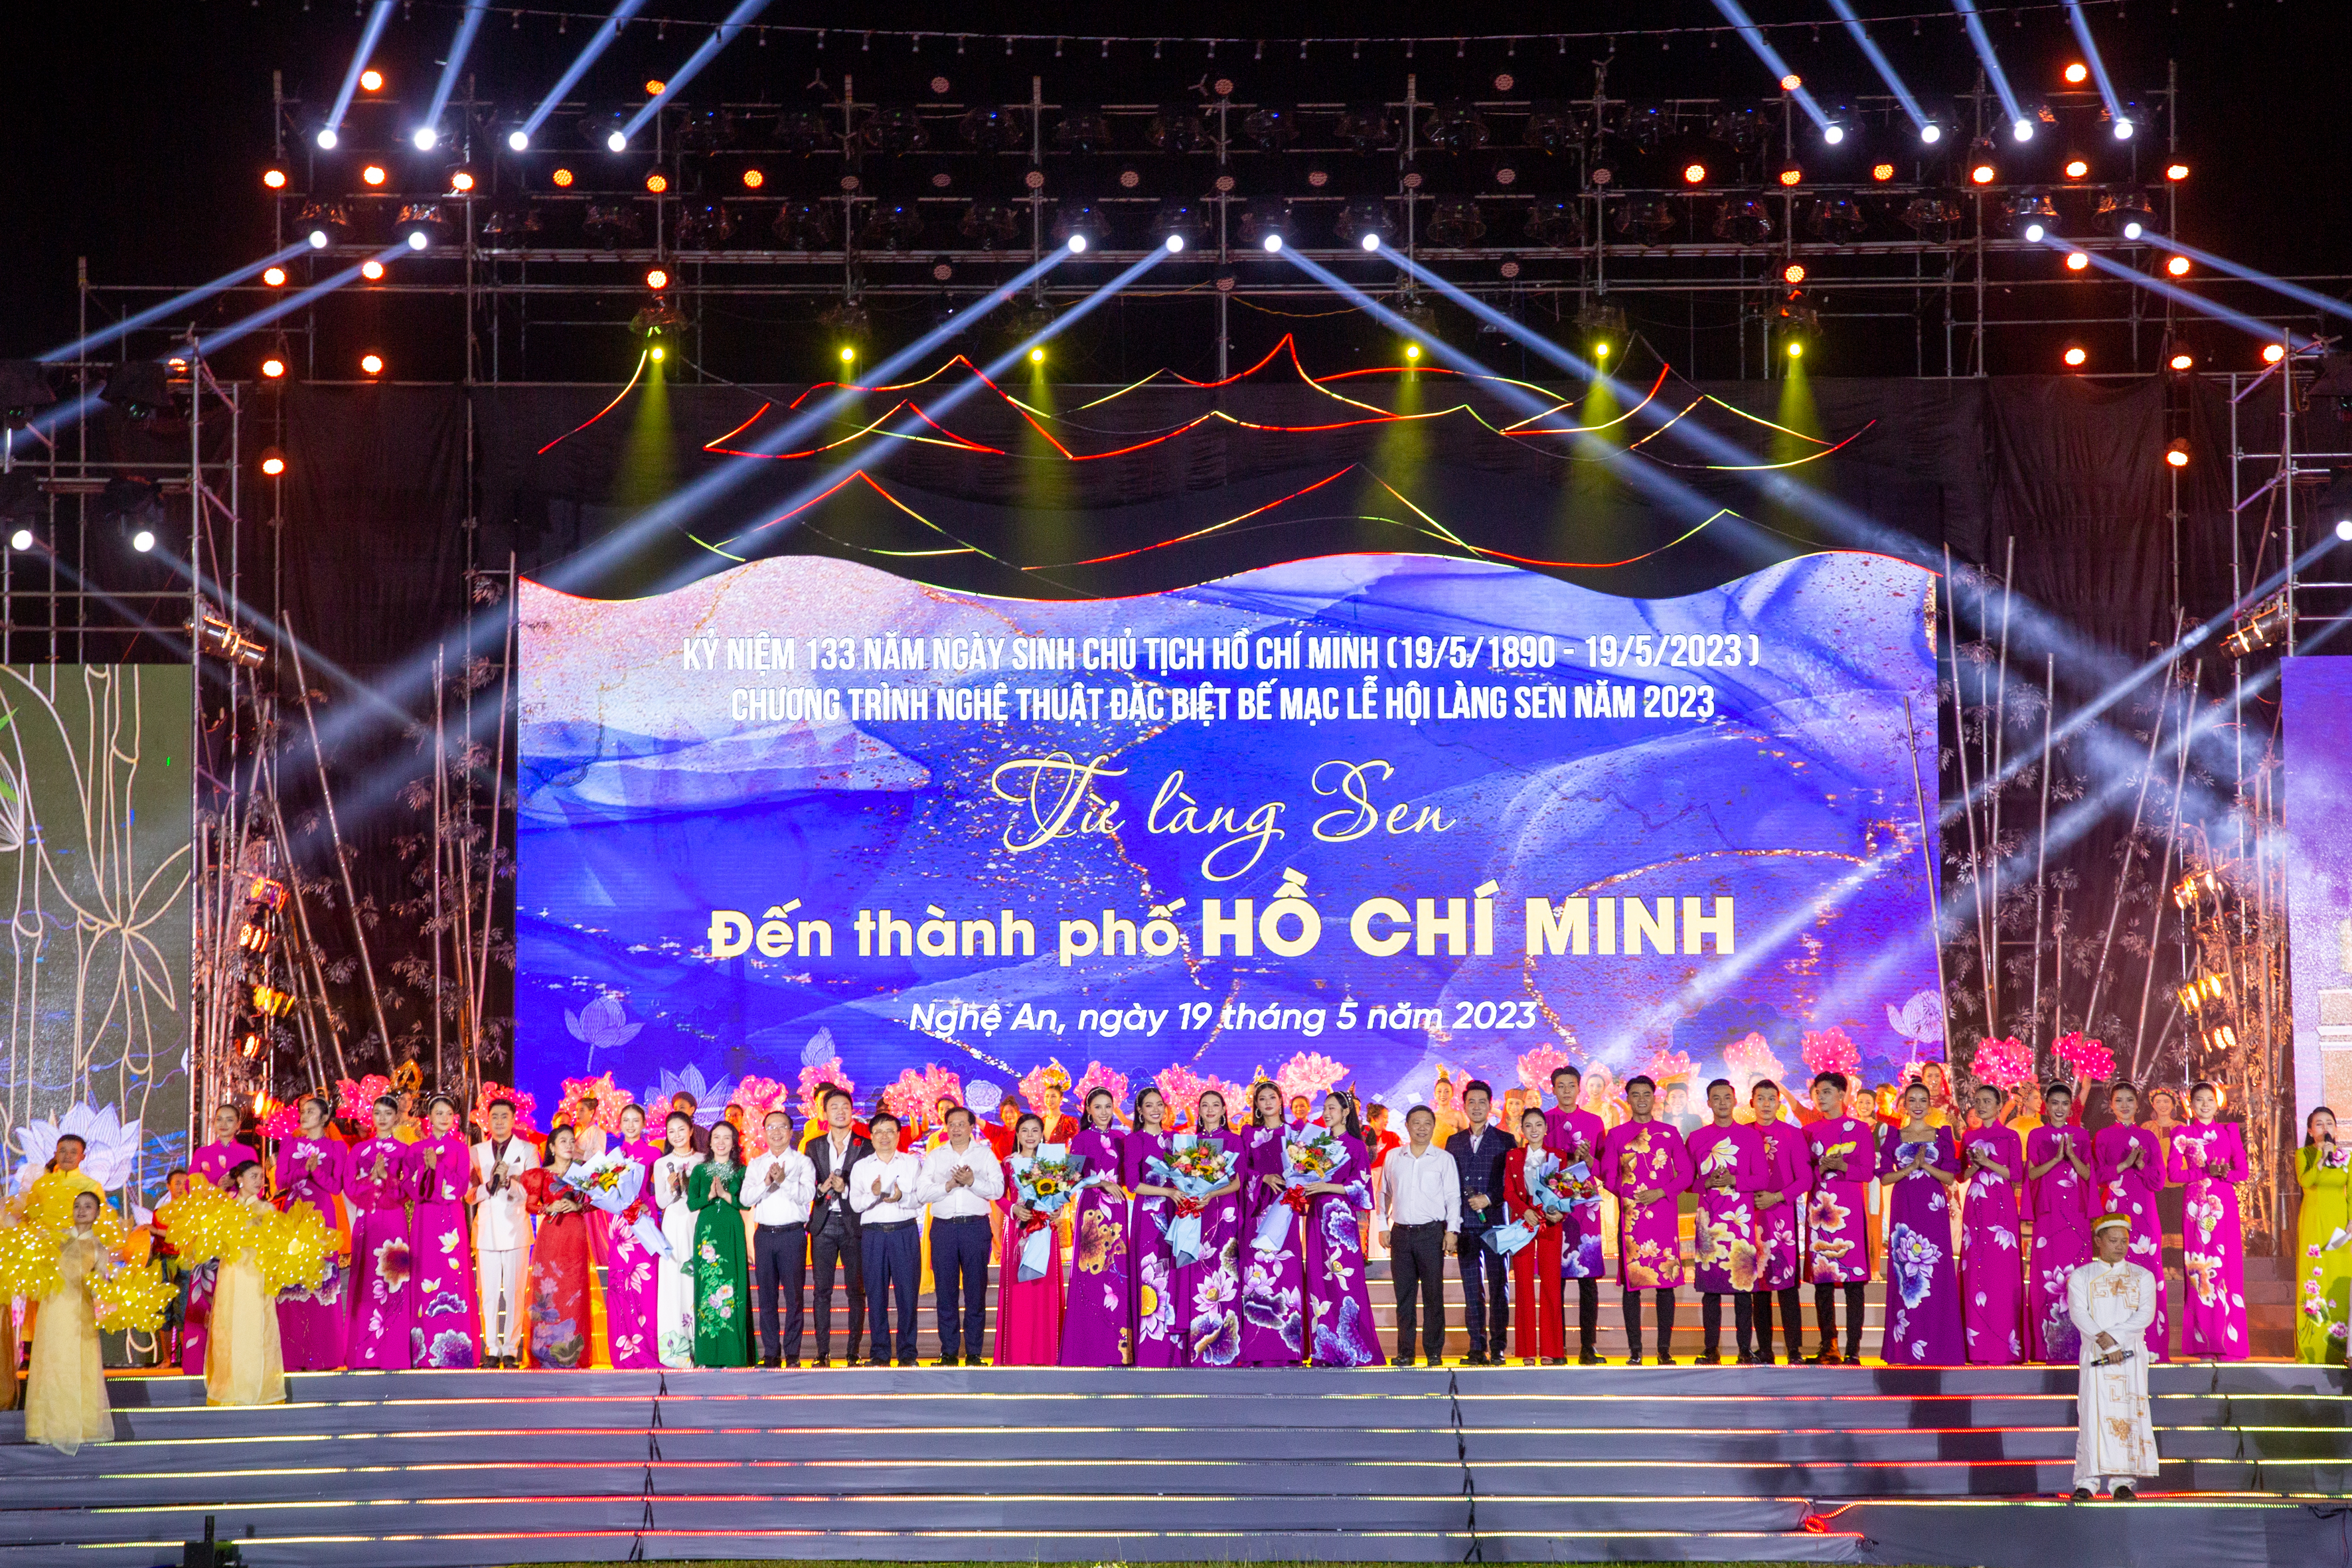 Bế mạc Lễ hội Làng Sen và chương trình nghệ thuật đặc biệt “Từ Làng Sen đến Thành phố Hồ Chí Minh”